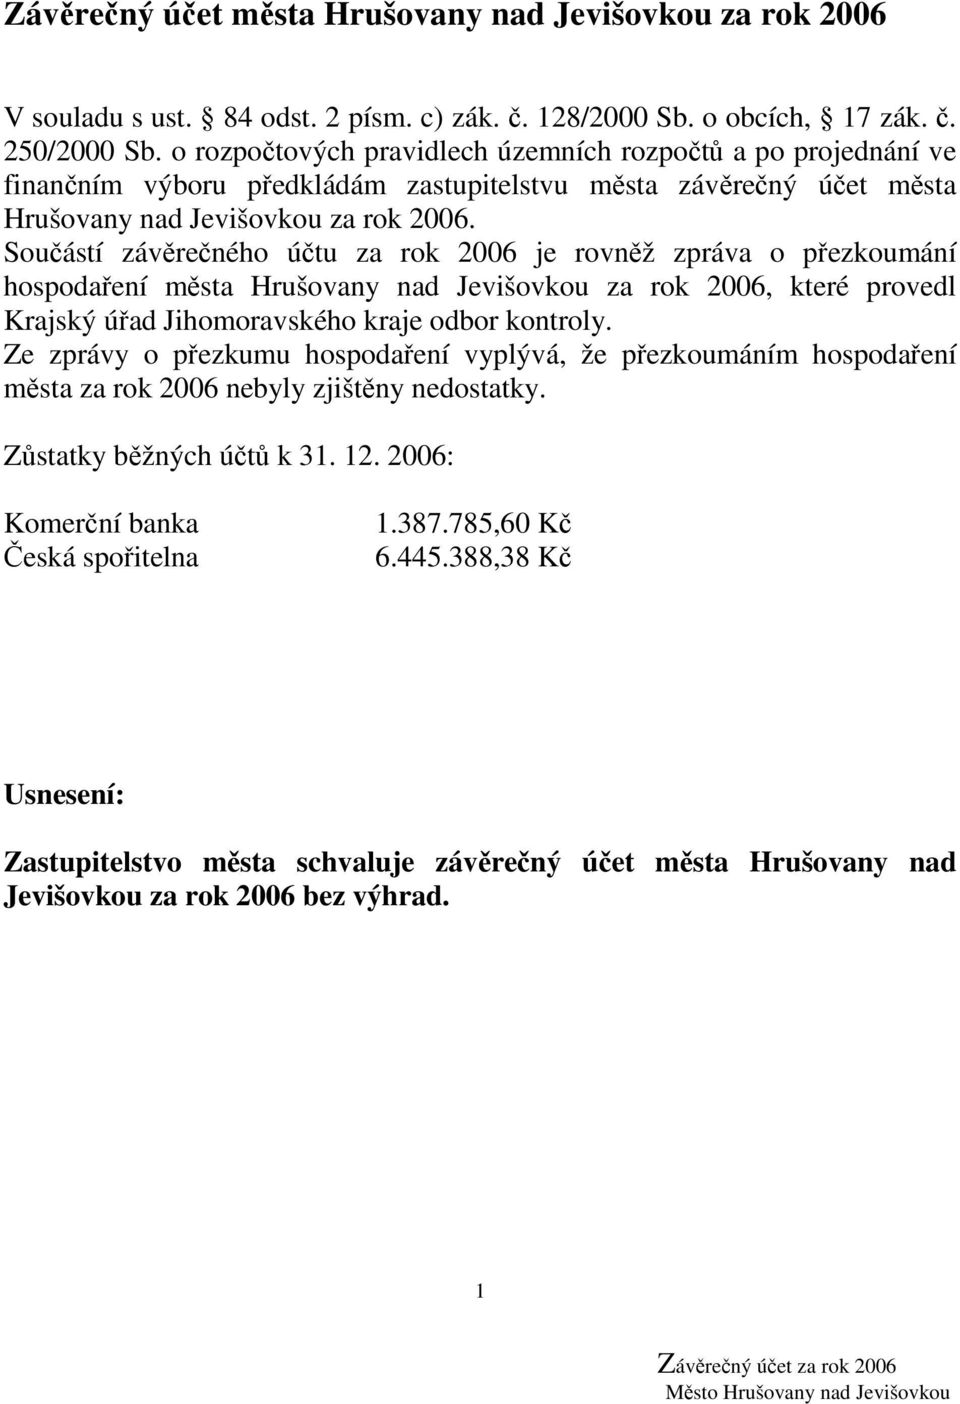 Součástí závěrečného účtu za rok 2006 je rovněž zpráva o přezkoumání hospodaření města Hrušovany nad Jevišovkou za rok 2006, které provedl Krajský úřad Jihomoravského kraje odbor kontroly.